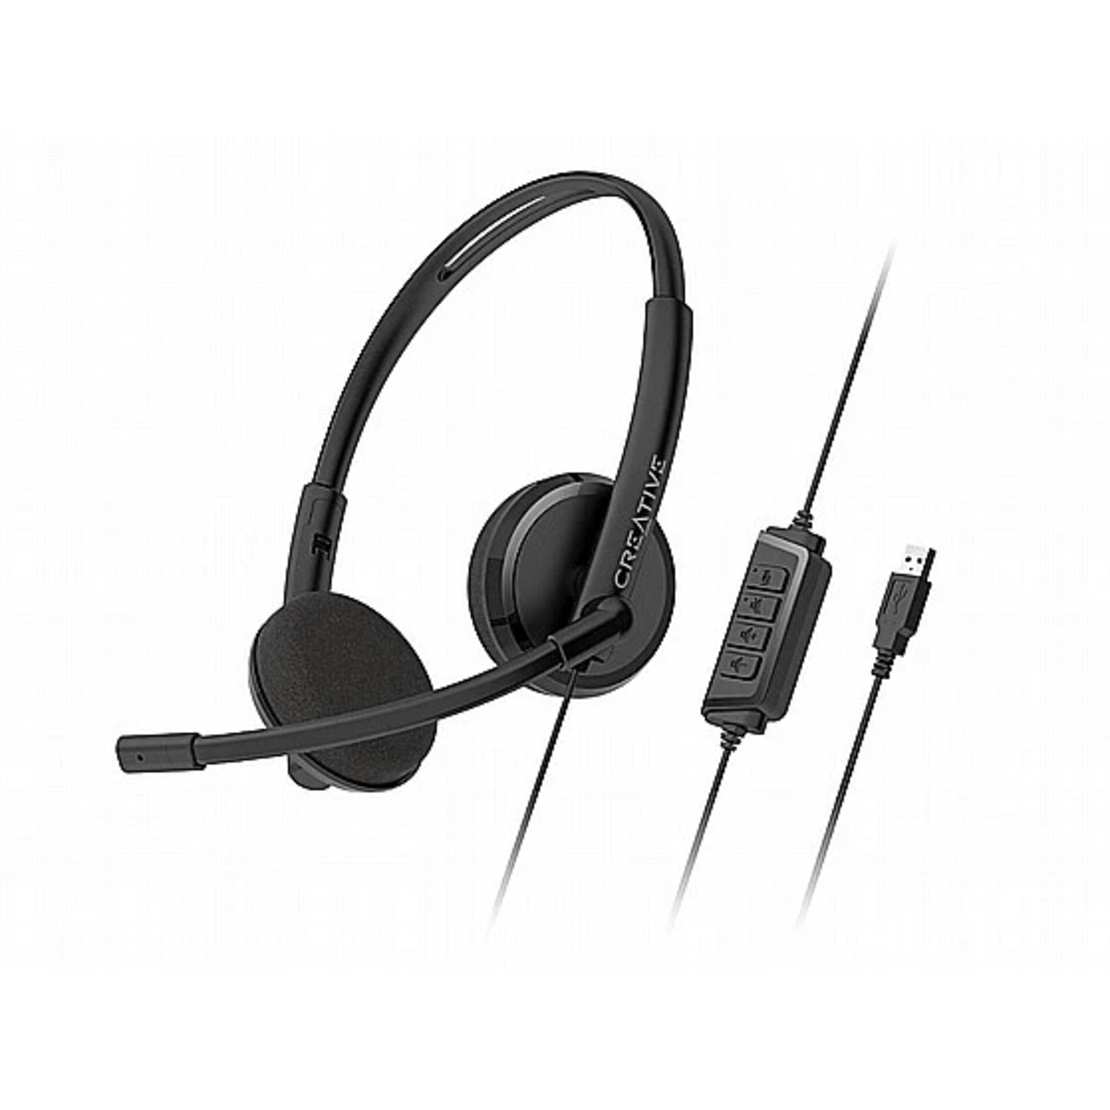 אוזניות Creative HS-220 - USB Headset with Noise-cancelling Mic and Inline Remote